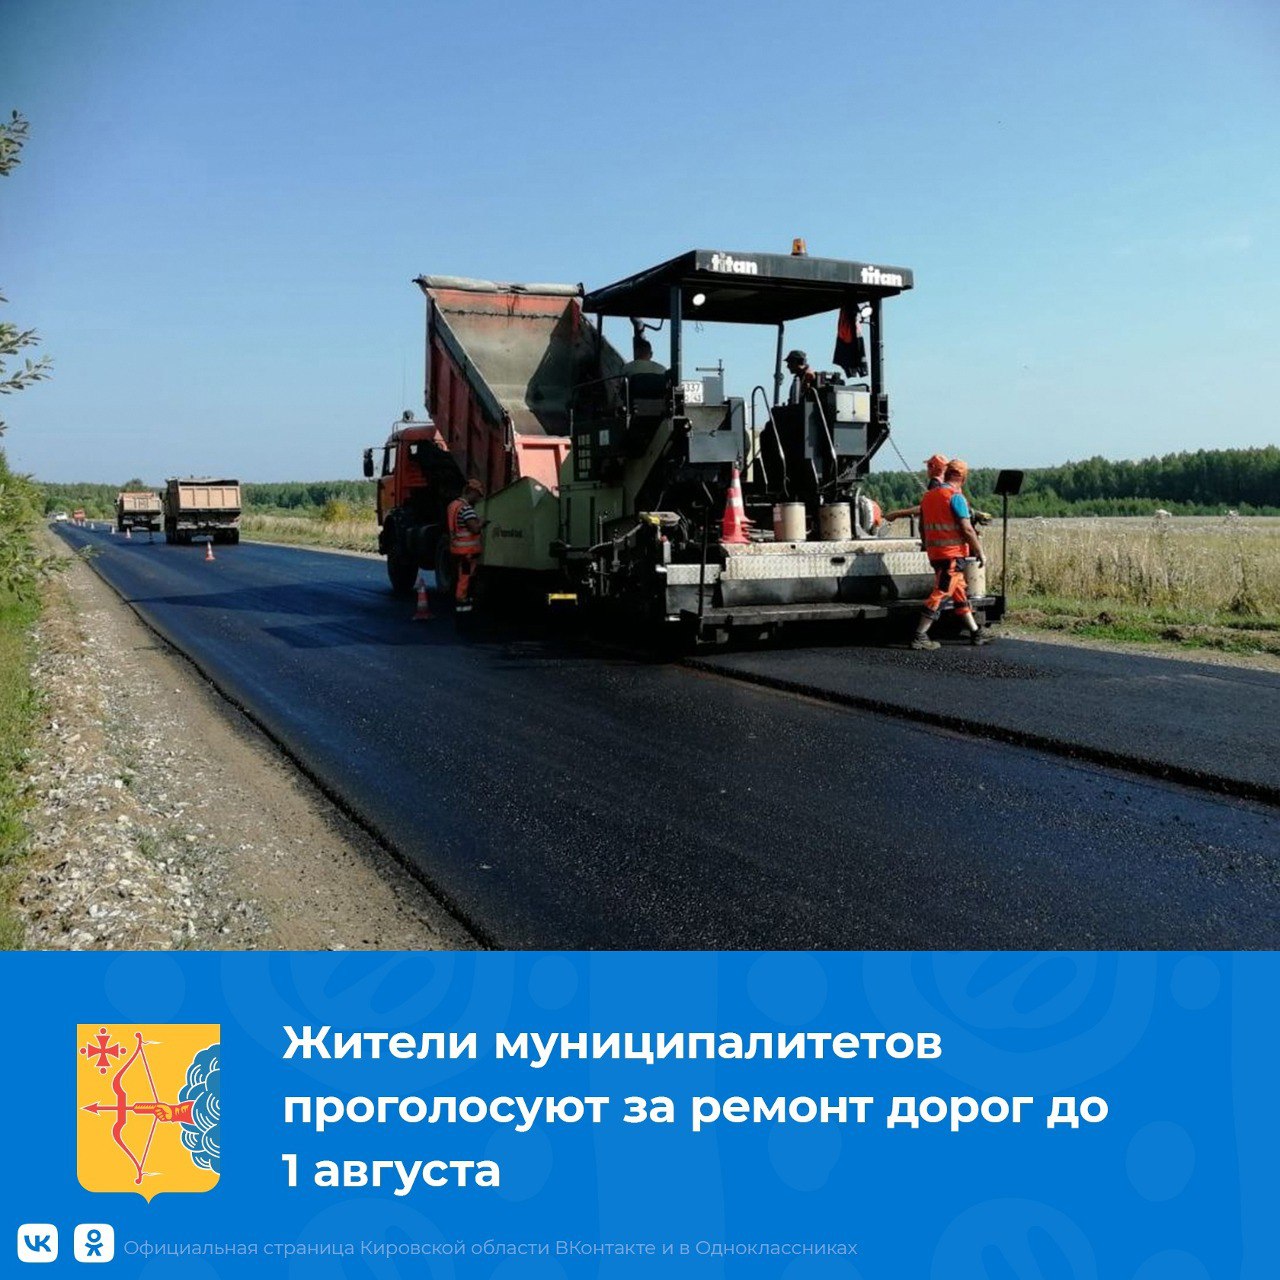 Жители муниципалитетов проголосуют за ремонт дорог до 1 августа.